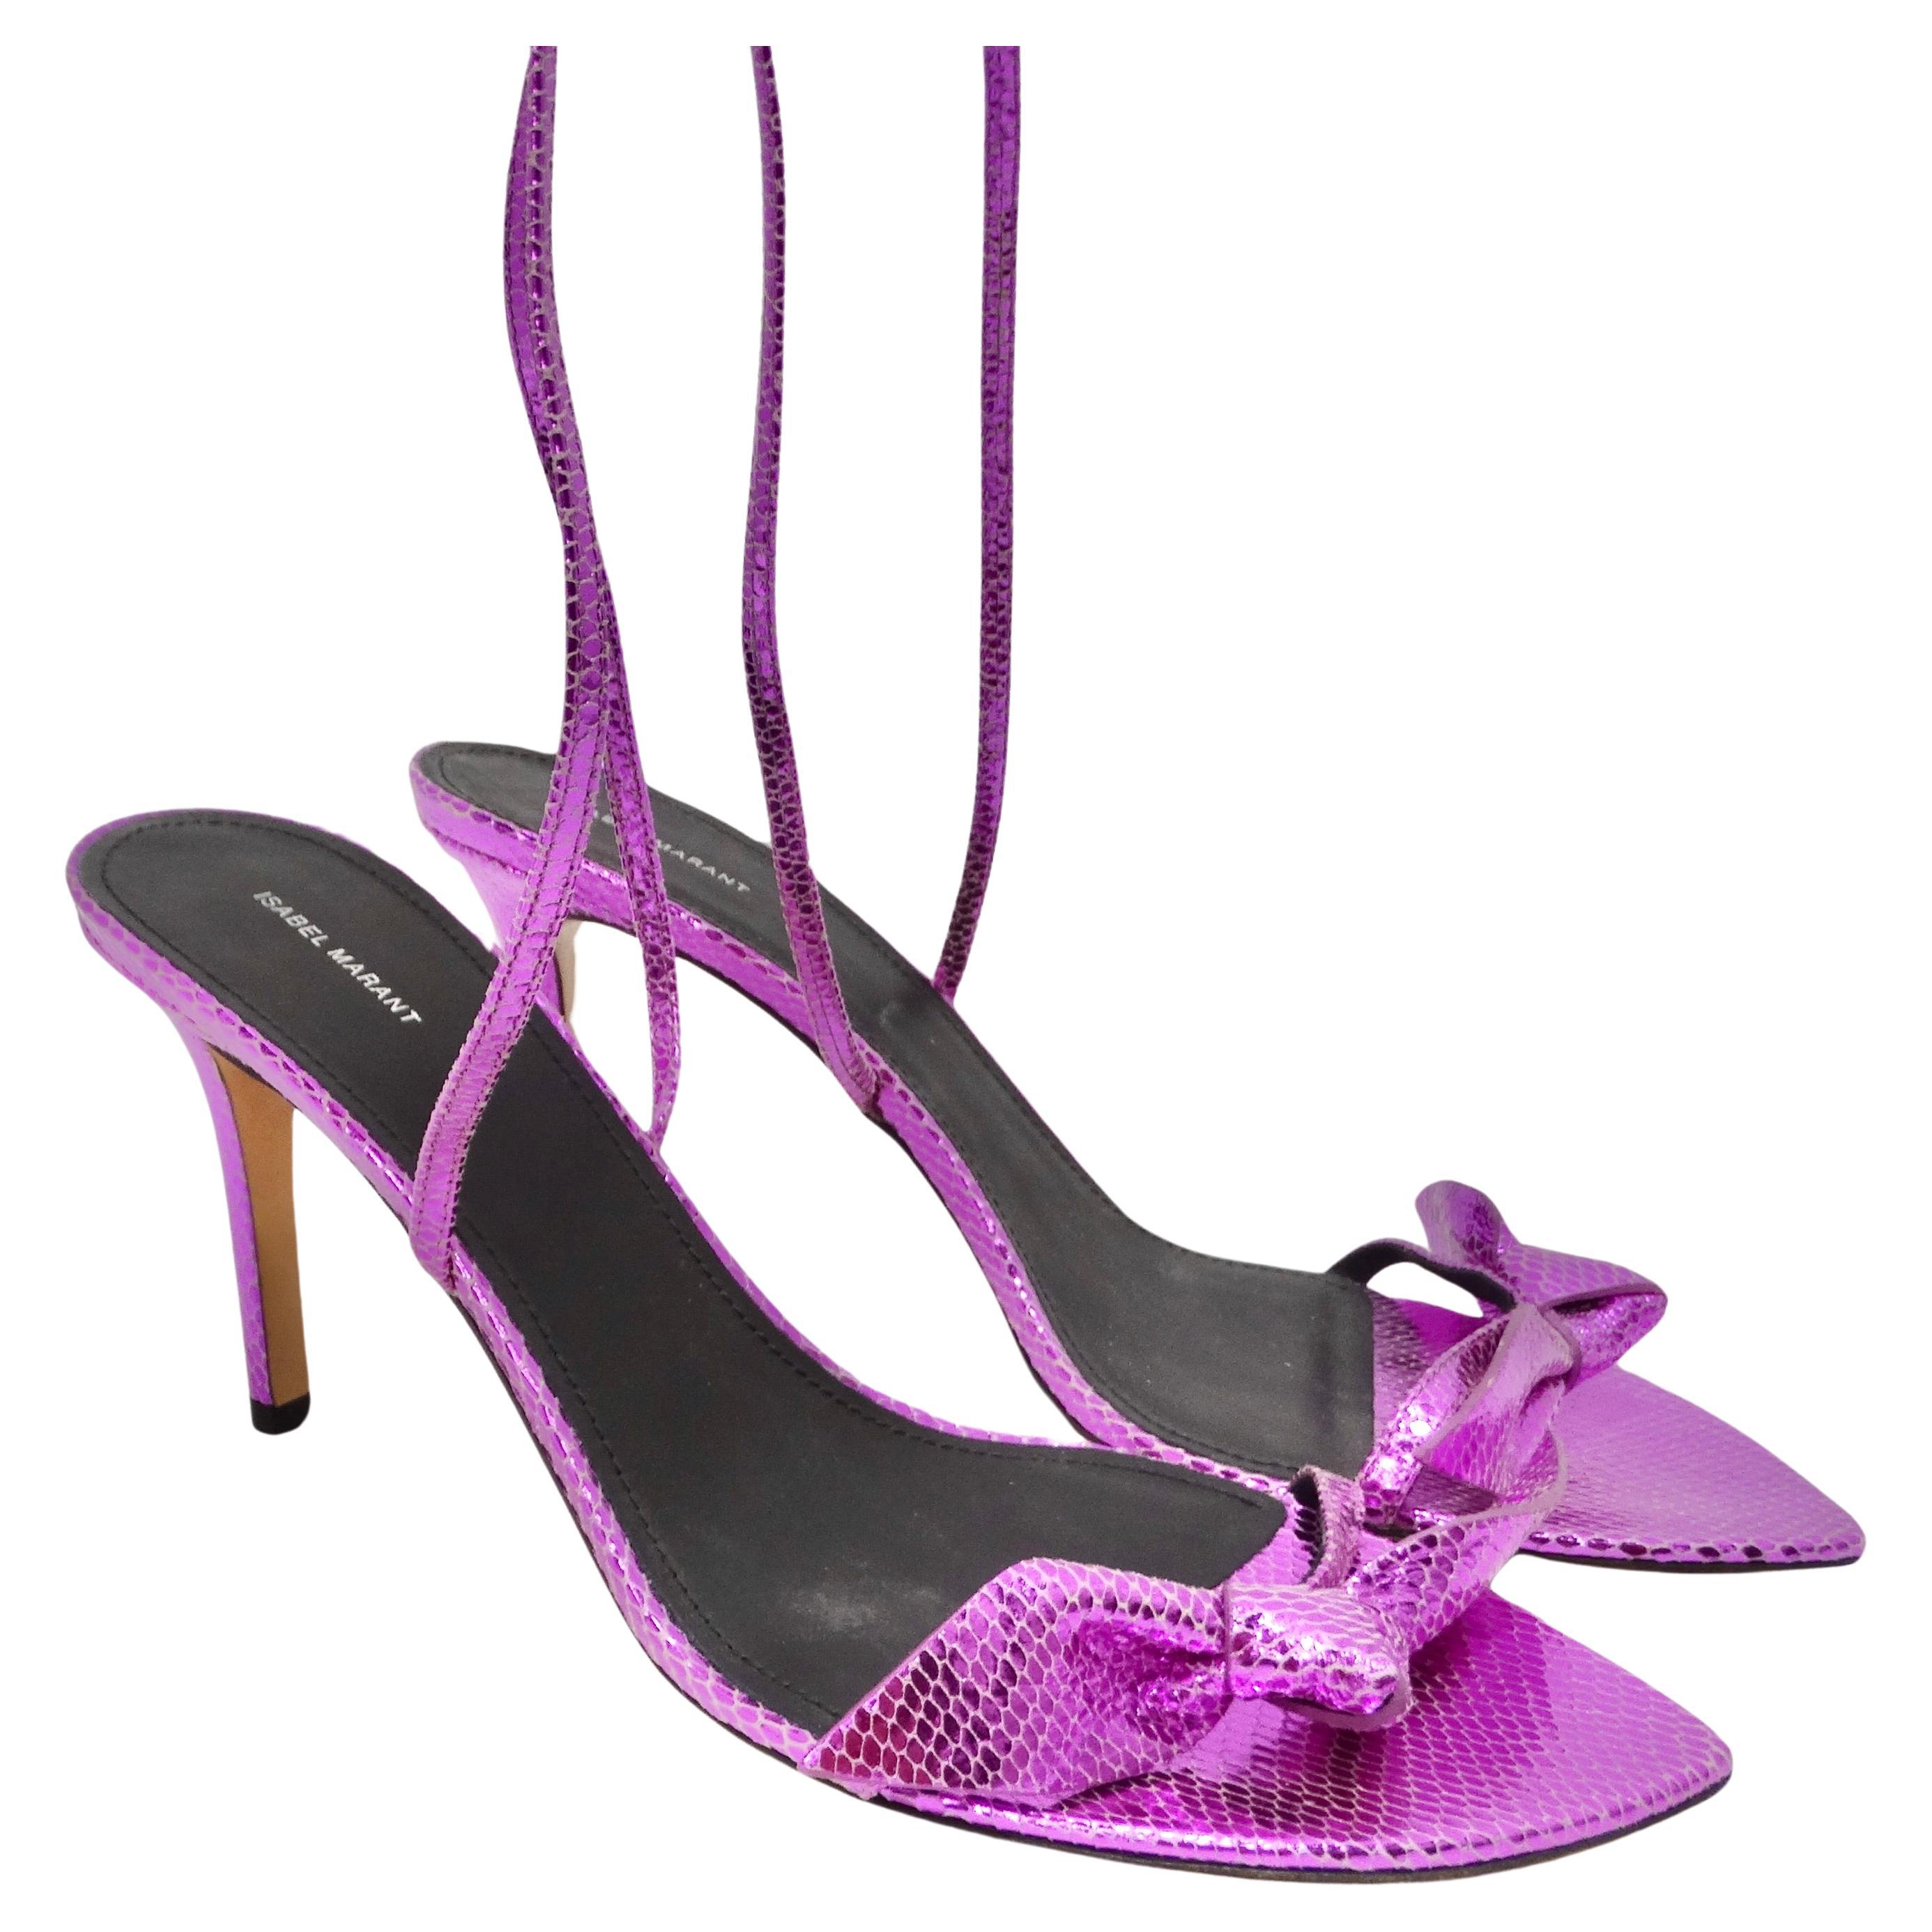 La sandale à talon en cuir violet Isabel Marant est une paire de talons qui redéfinit la mode avec une touche d'audace et d'éclat. Ces talons ne sont pas de simples chaussures, ils sont une déclaration, une affirmation audacieuse de votre style et